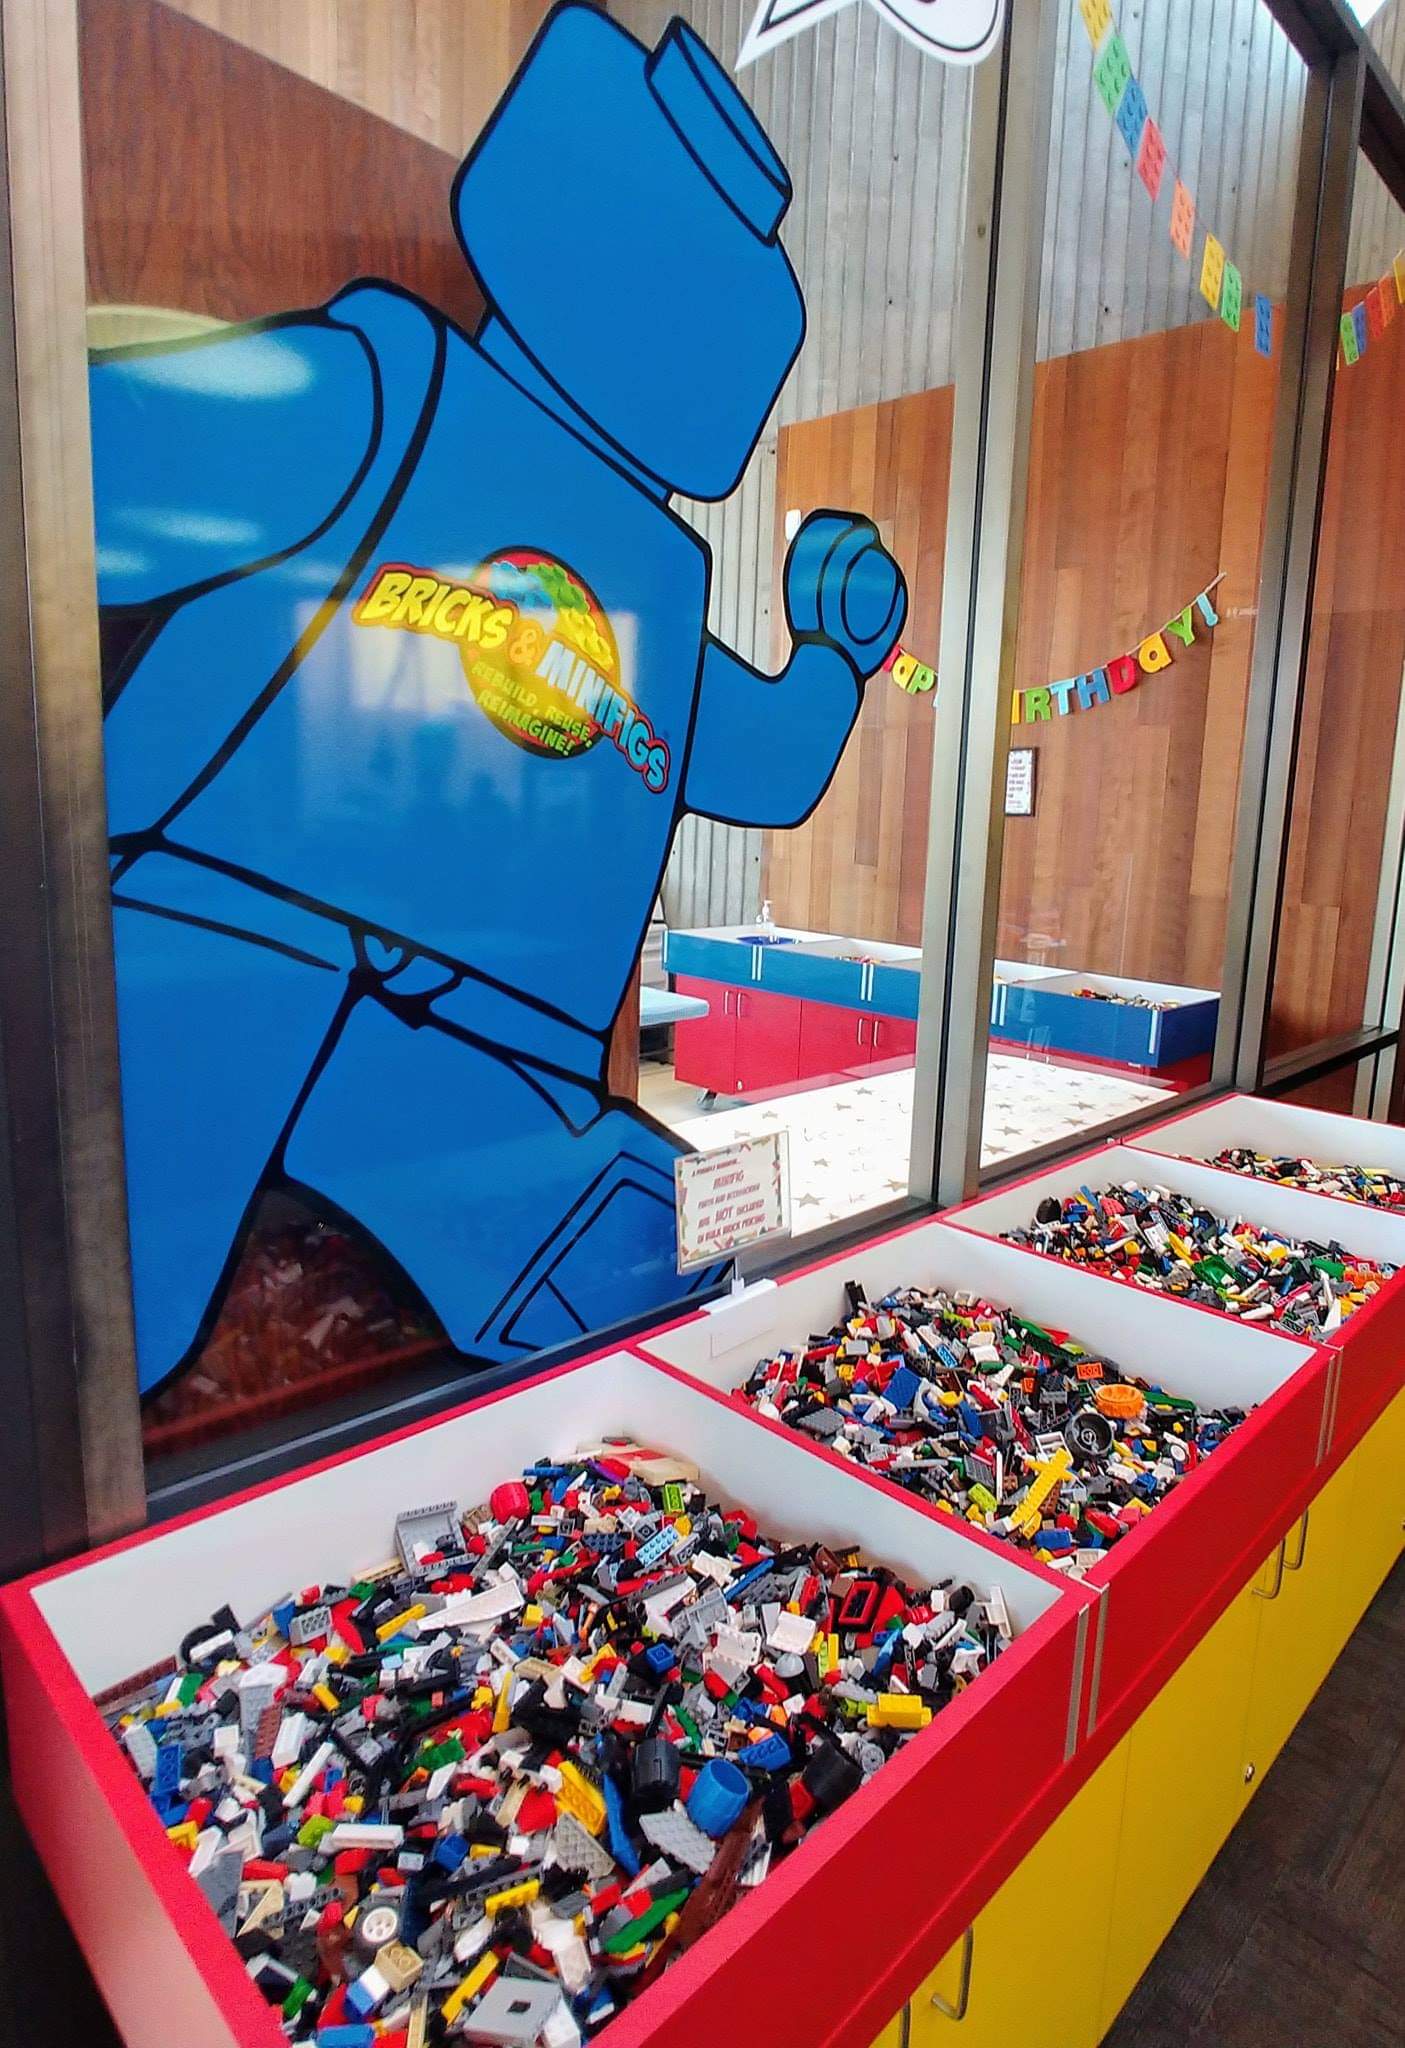 Loose Legos in multiple bins.